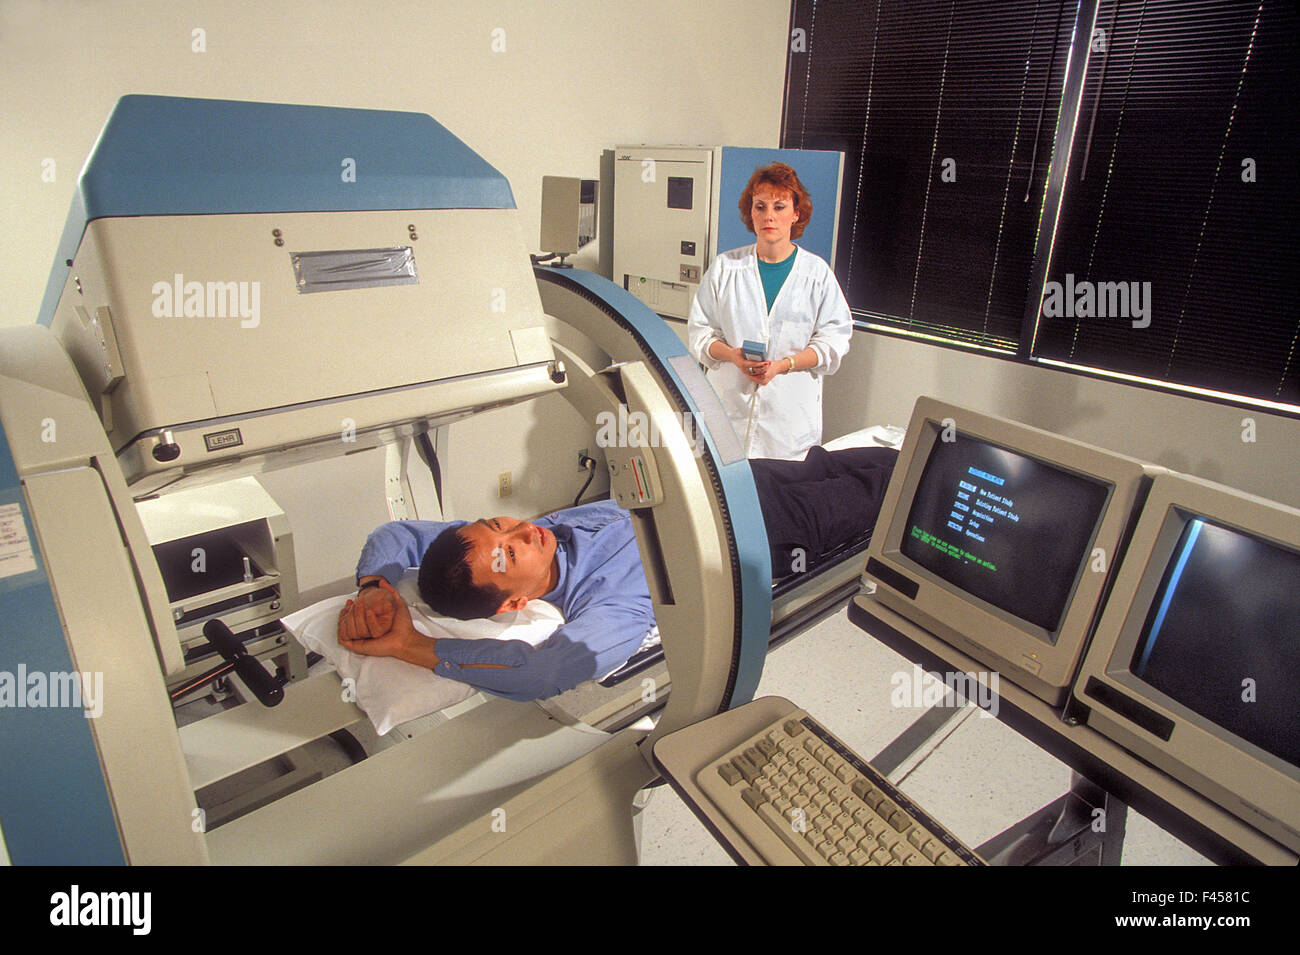 Ein Radiologie-Techniker zeigt, dass eine "offene" MRT-Gerät in Laguna Hills, CA. Magnetresonanz-Bildgebung in der Radiologie verwendet wird, um die Anatomie und Physiologie des Körpers in Gesundheit und Krankheit zu untersuchen. MRI-Scanner verwenden, Magnetfelder und Radio wav Stockfoto